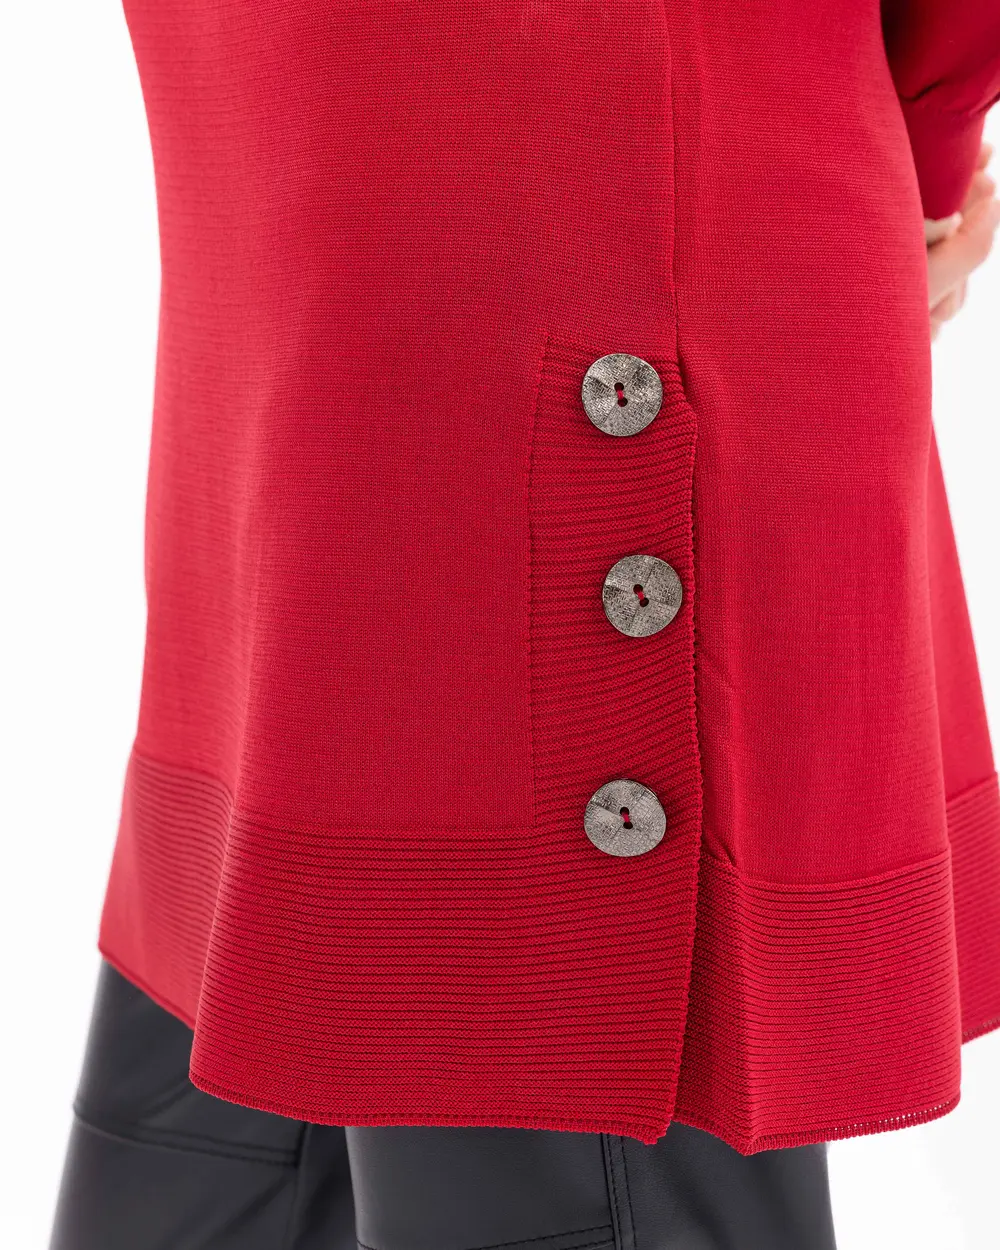 Button Detailed High Collar Knitwear Tunic